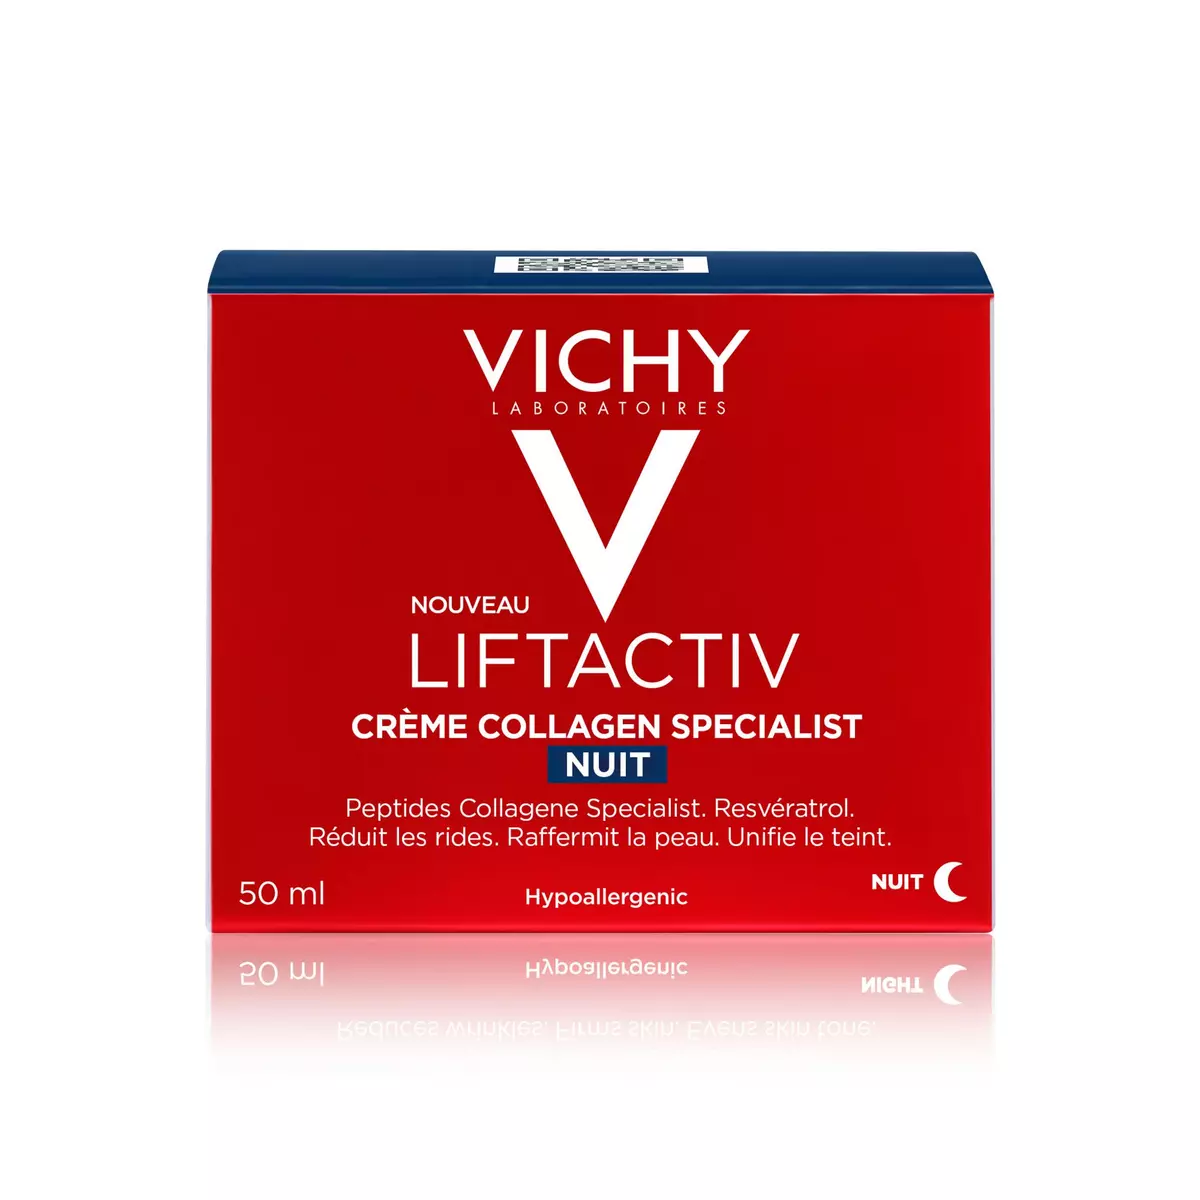 VICHY Liftactiv Crème collagen specialist nuit hypoallergénique 50ml